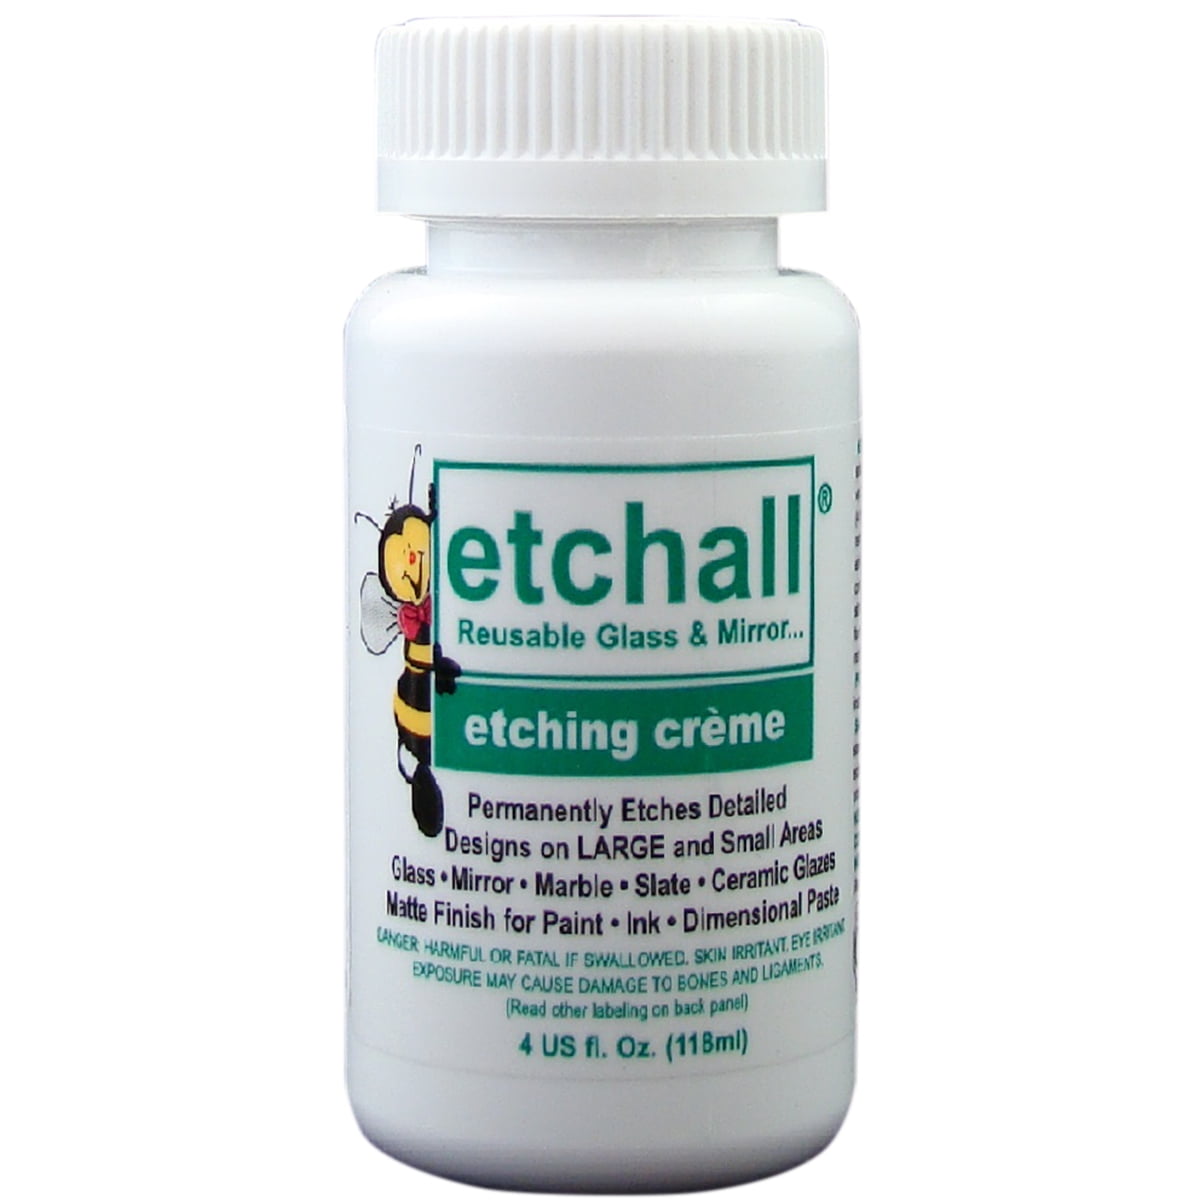 Etchall Etching Creme (4 oz)